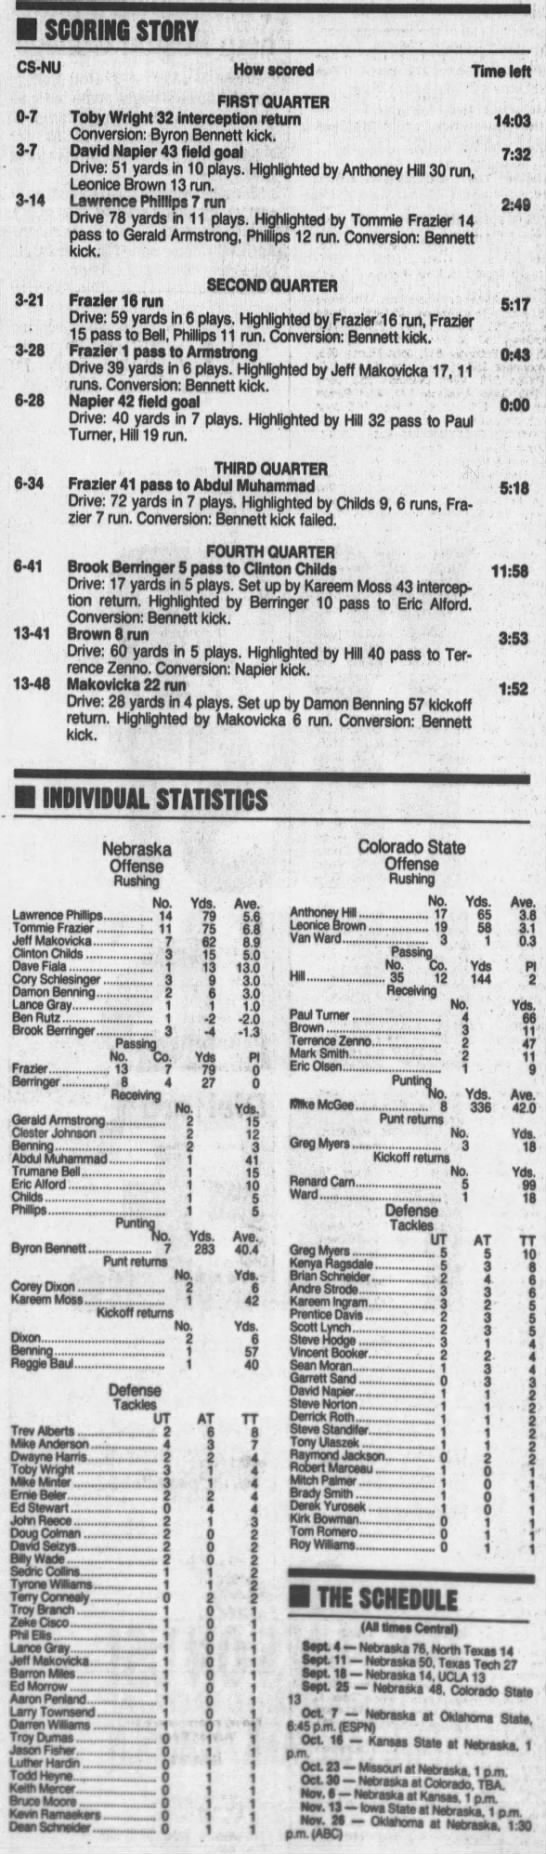 1993 Nebraska-Colorado State scoring - 